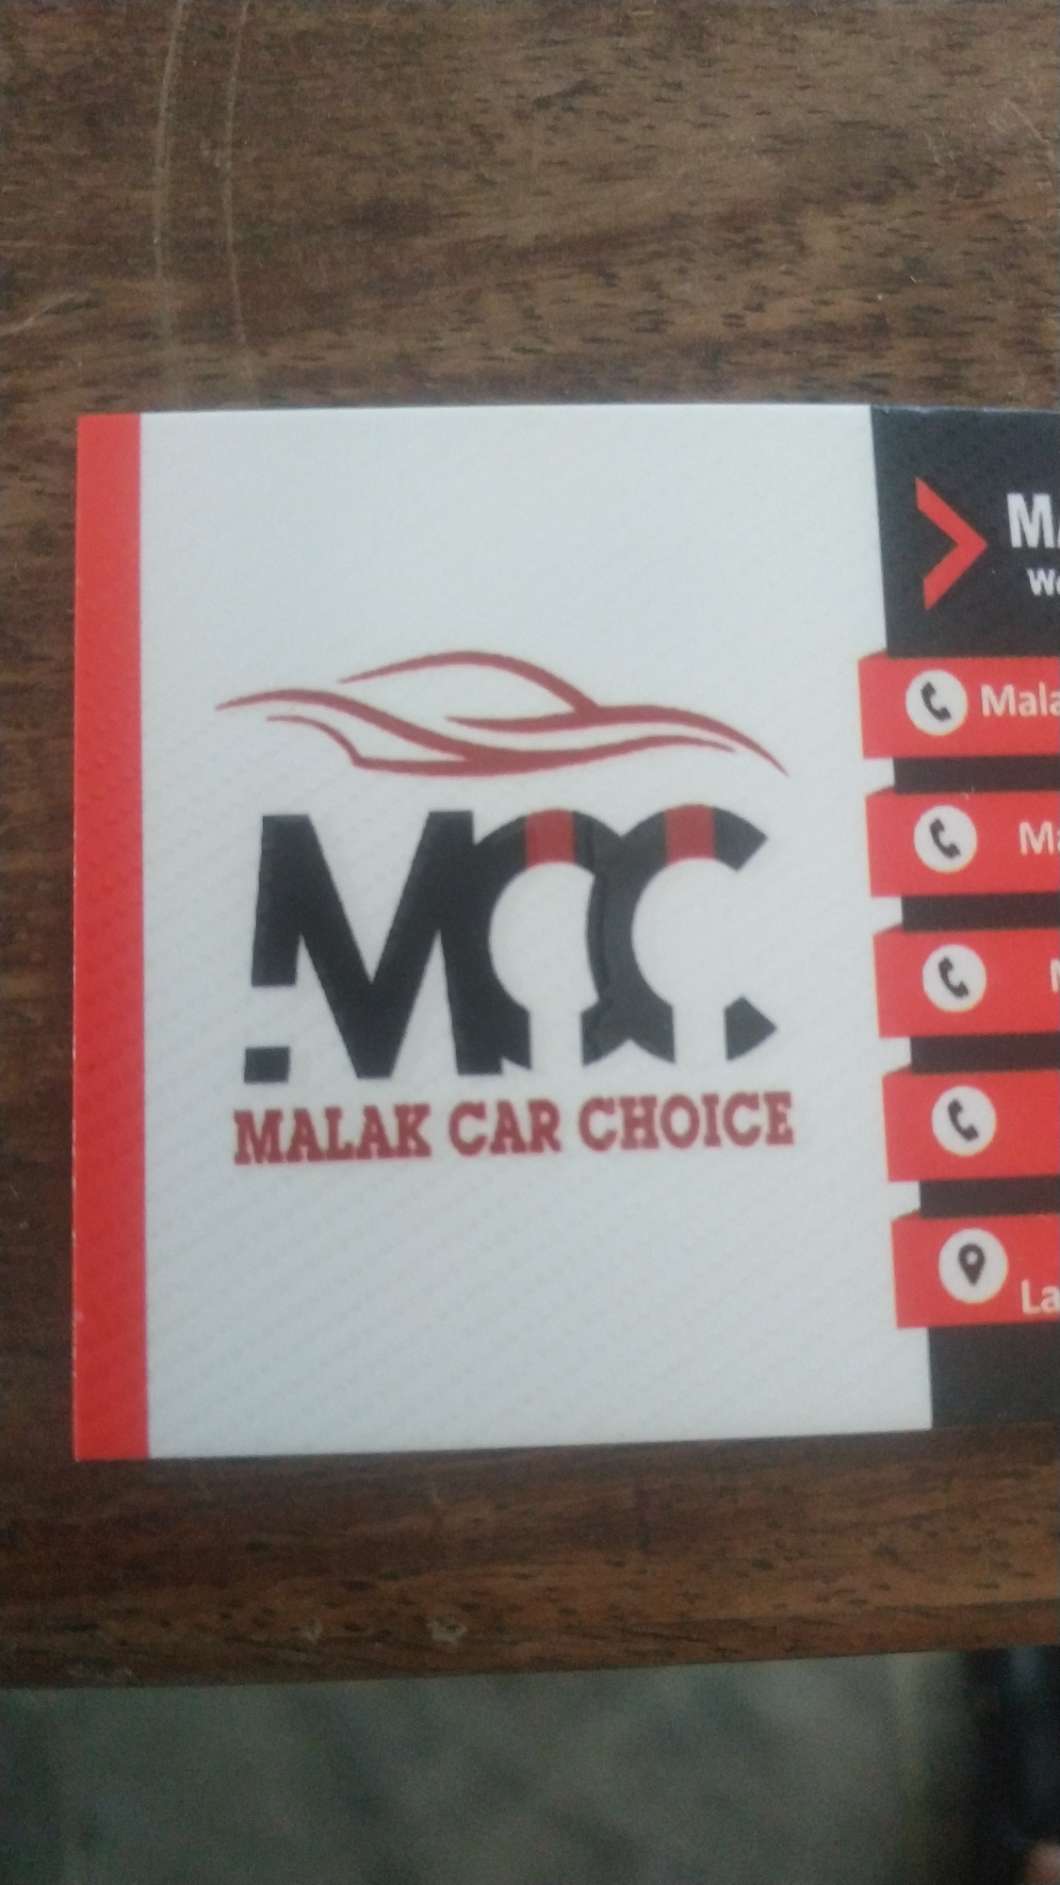 Malak car choice